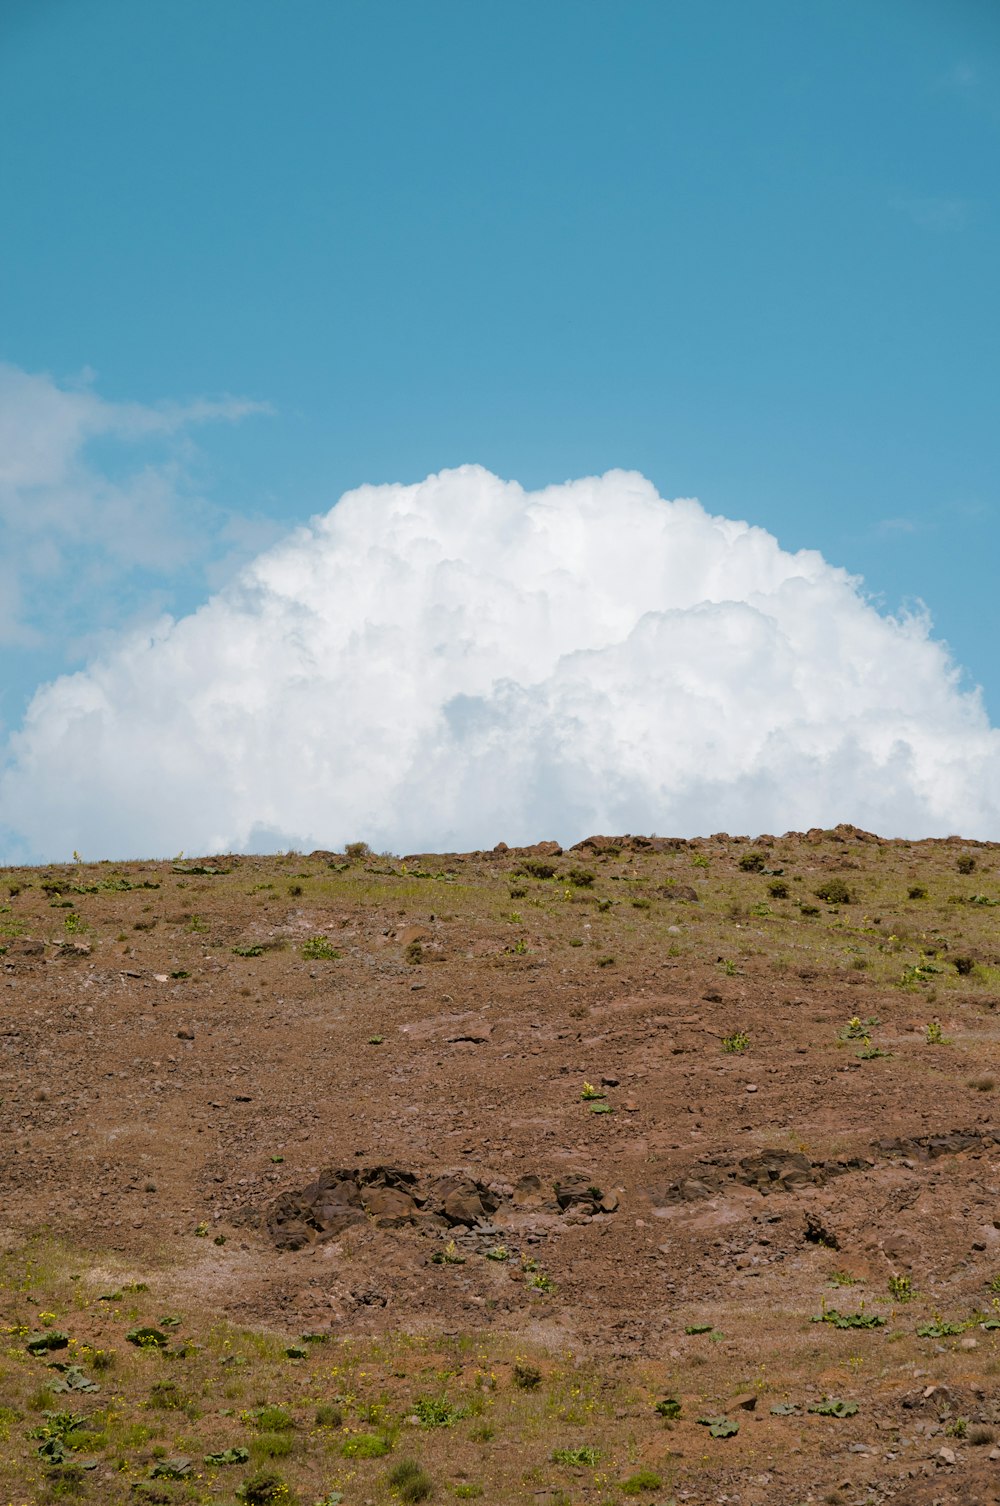 풀로 덮인 언덕 위에 서 있는 외로운 기린